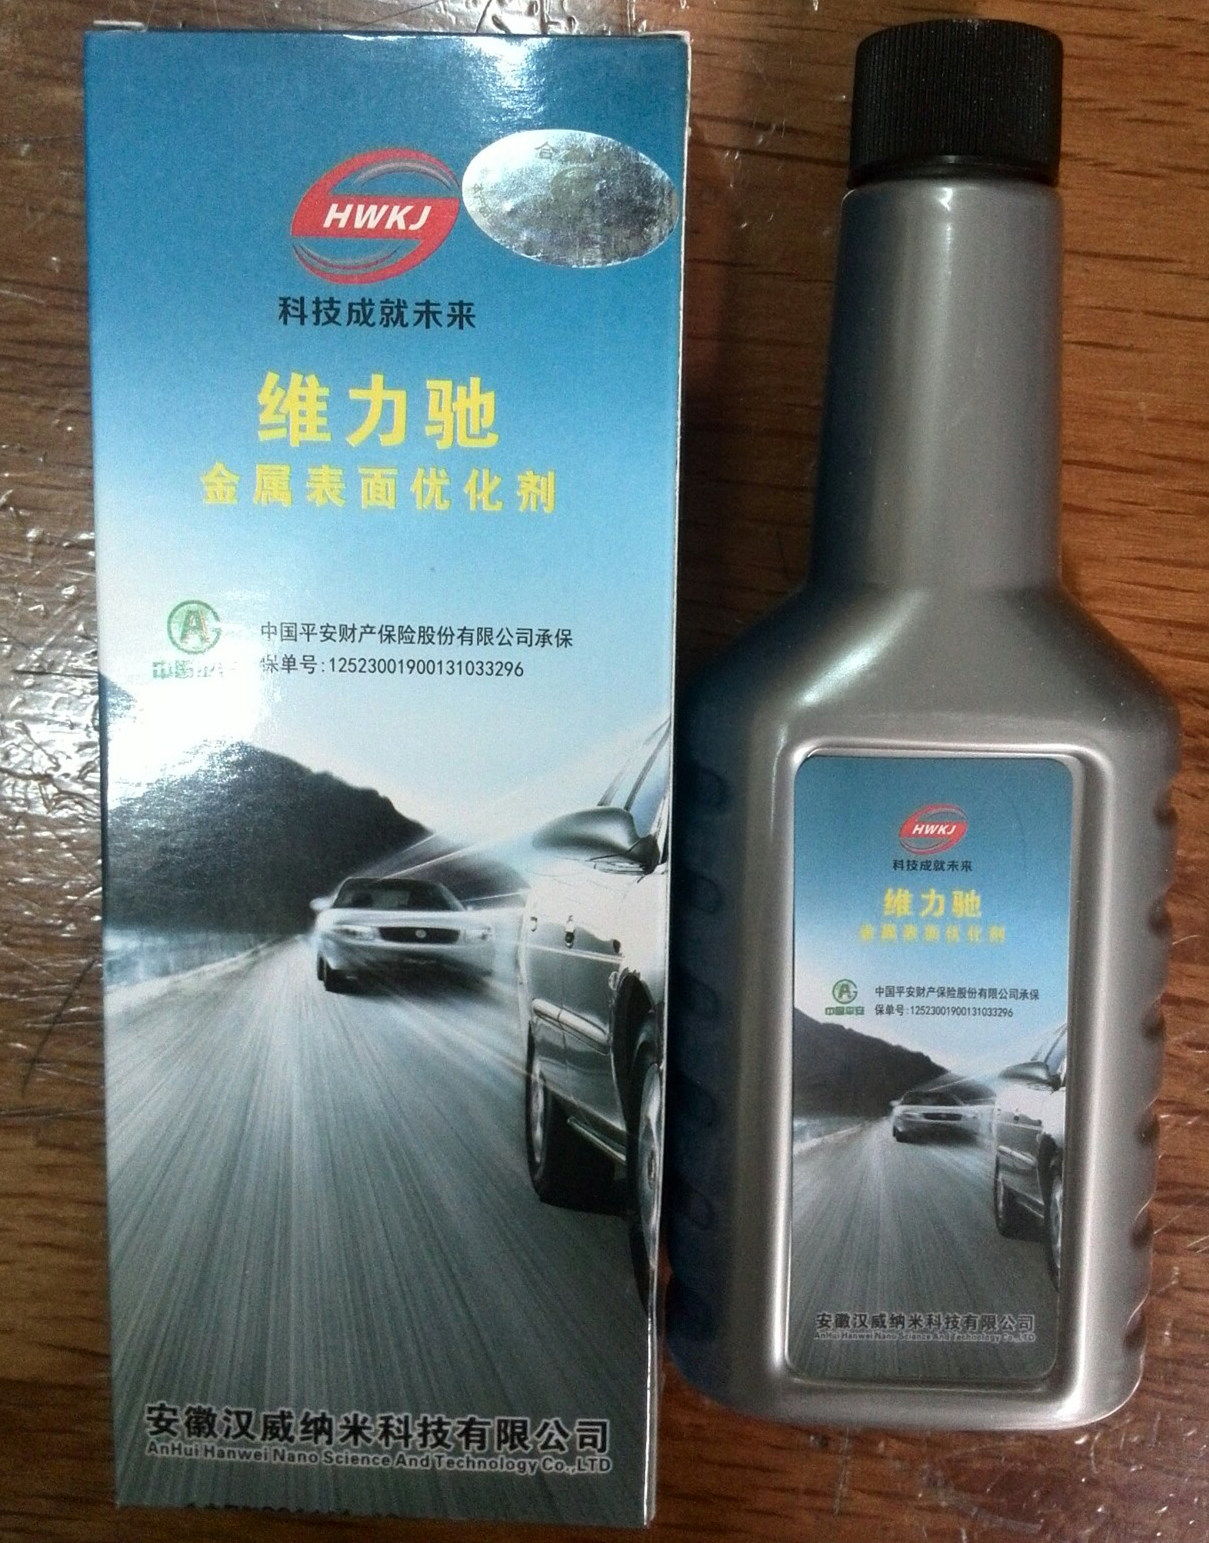 维力驰 金属表面优化剂 发动机 润滑剂 保护剂  特价中 汉威科技